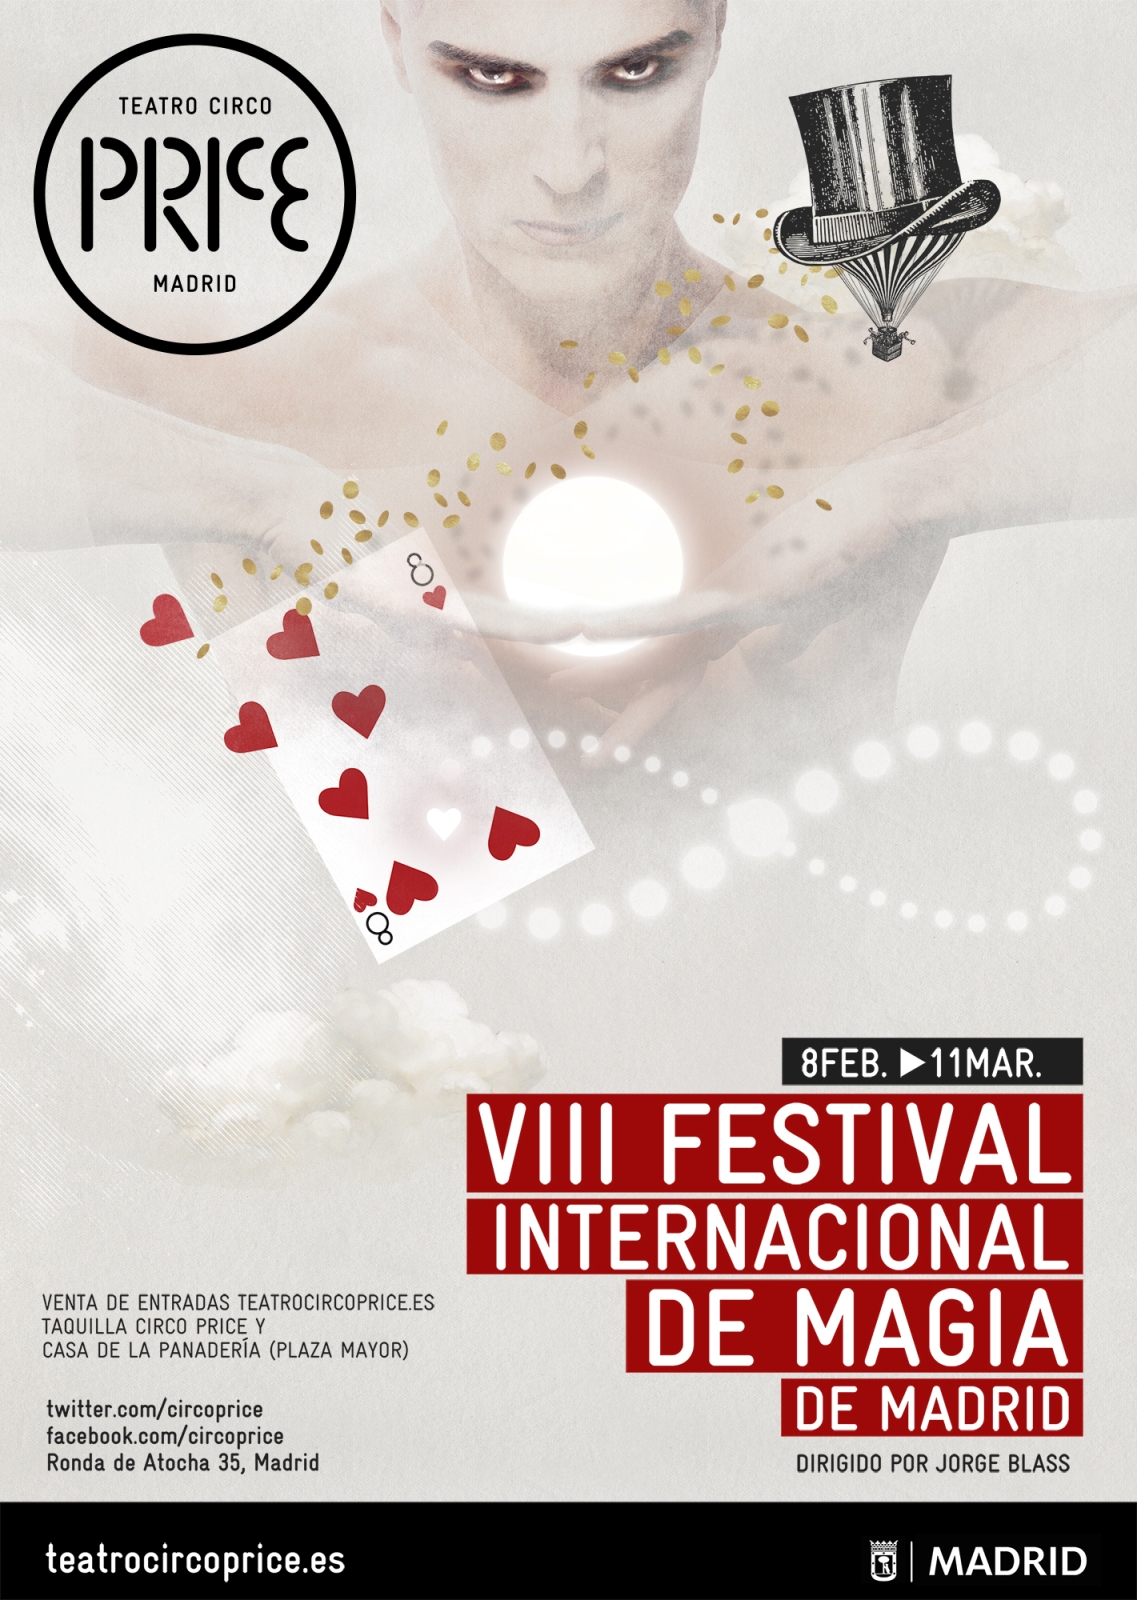 Vuelve el Festival Internacional de Magia de Madrid